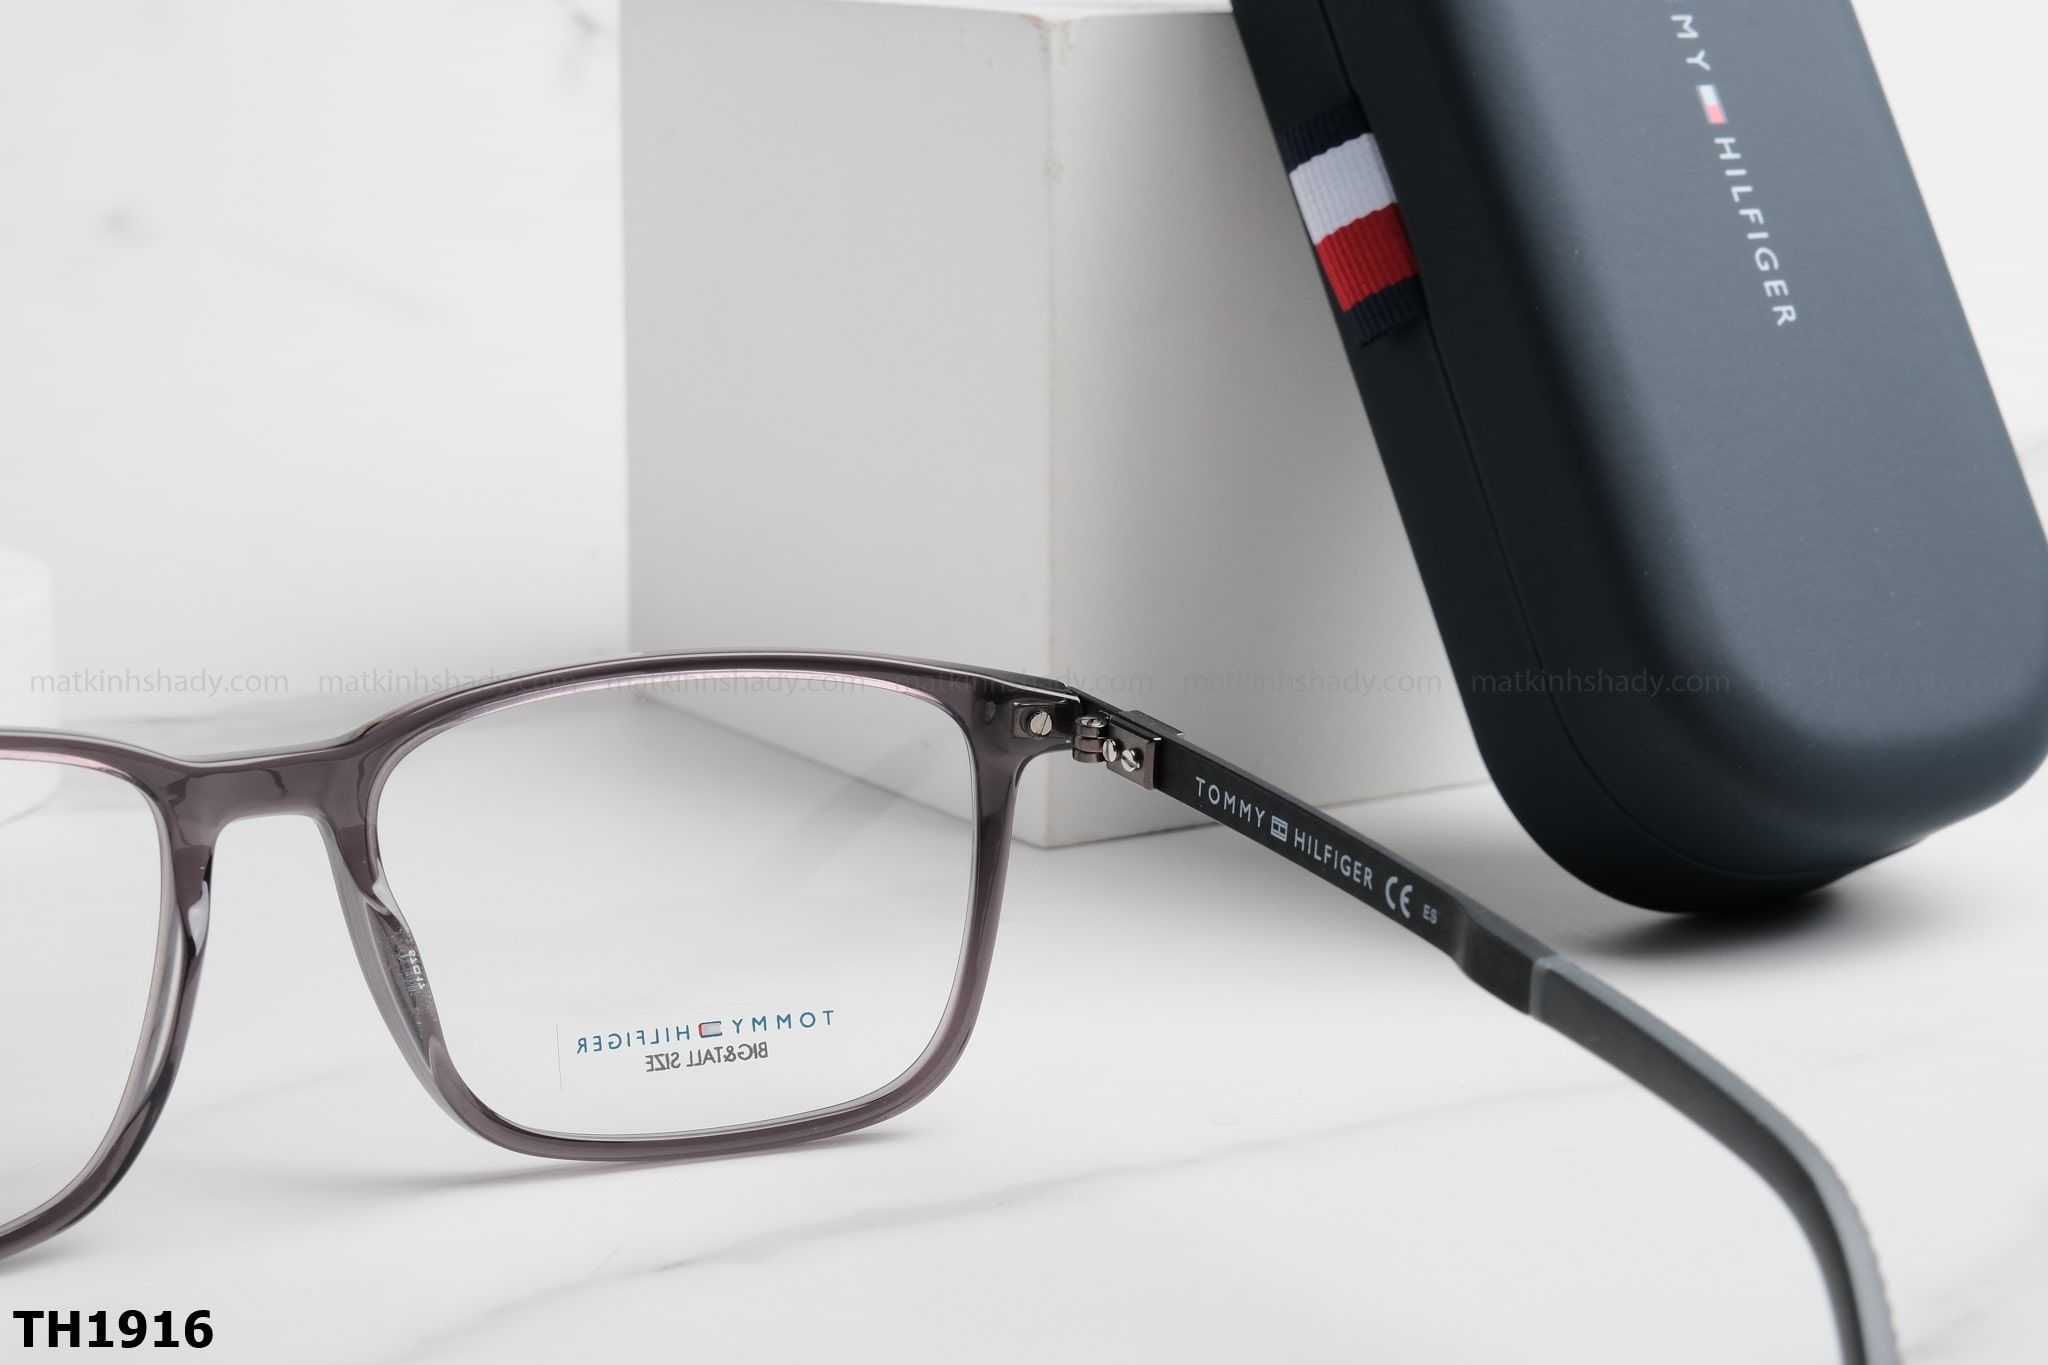  Tommy Hilfiger Eyewear - Glasses - TH1916 